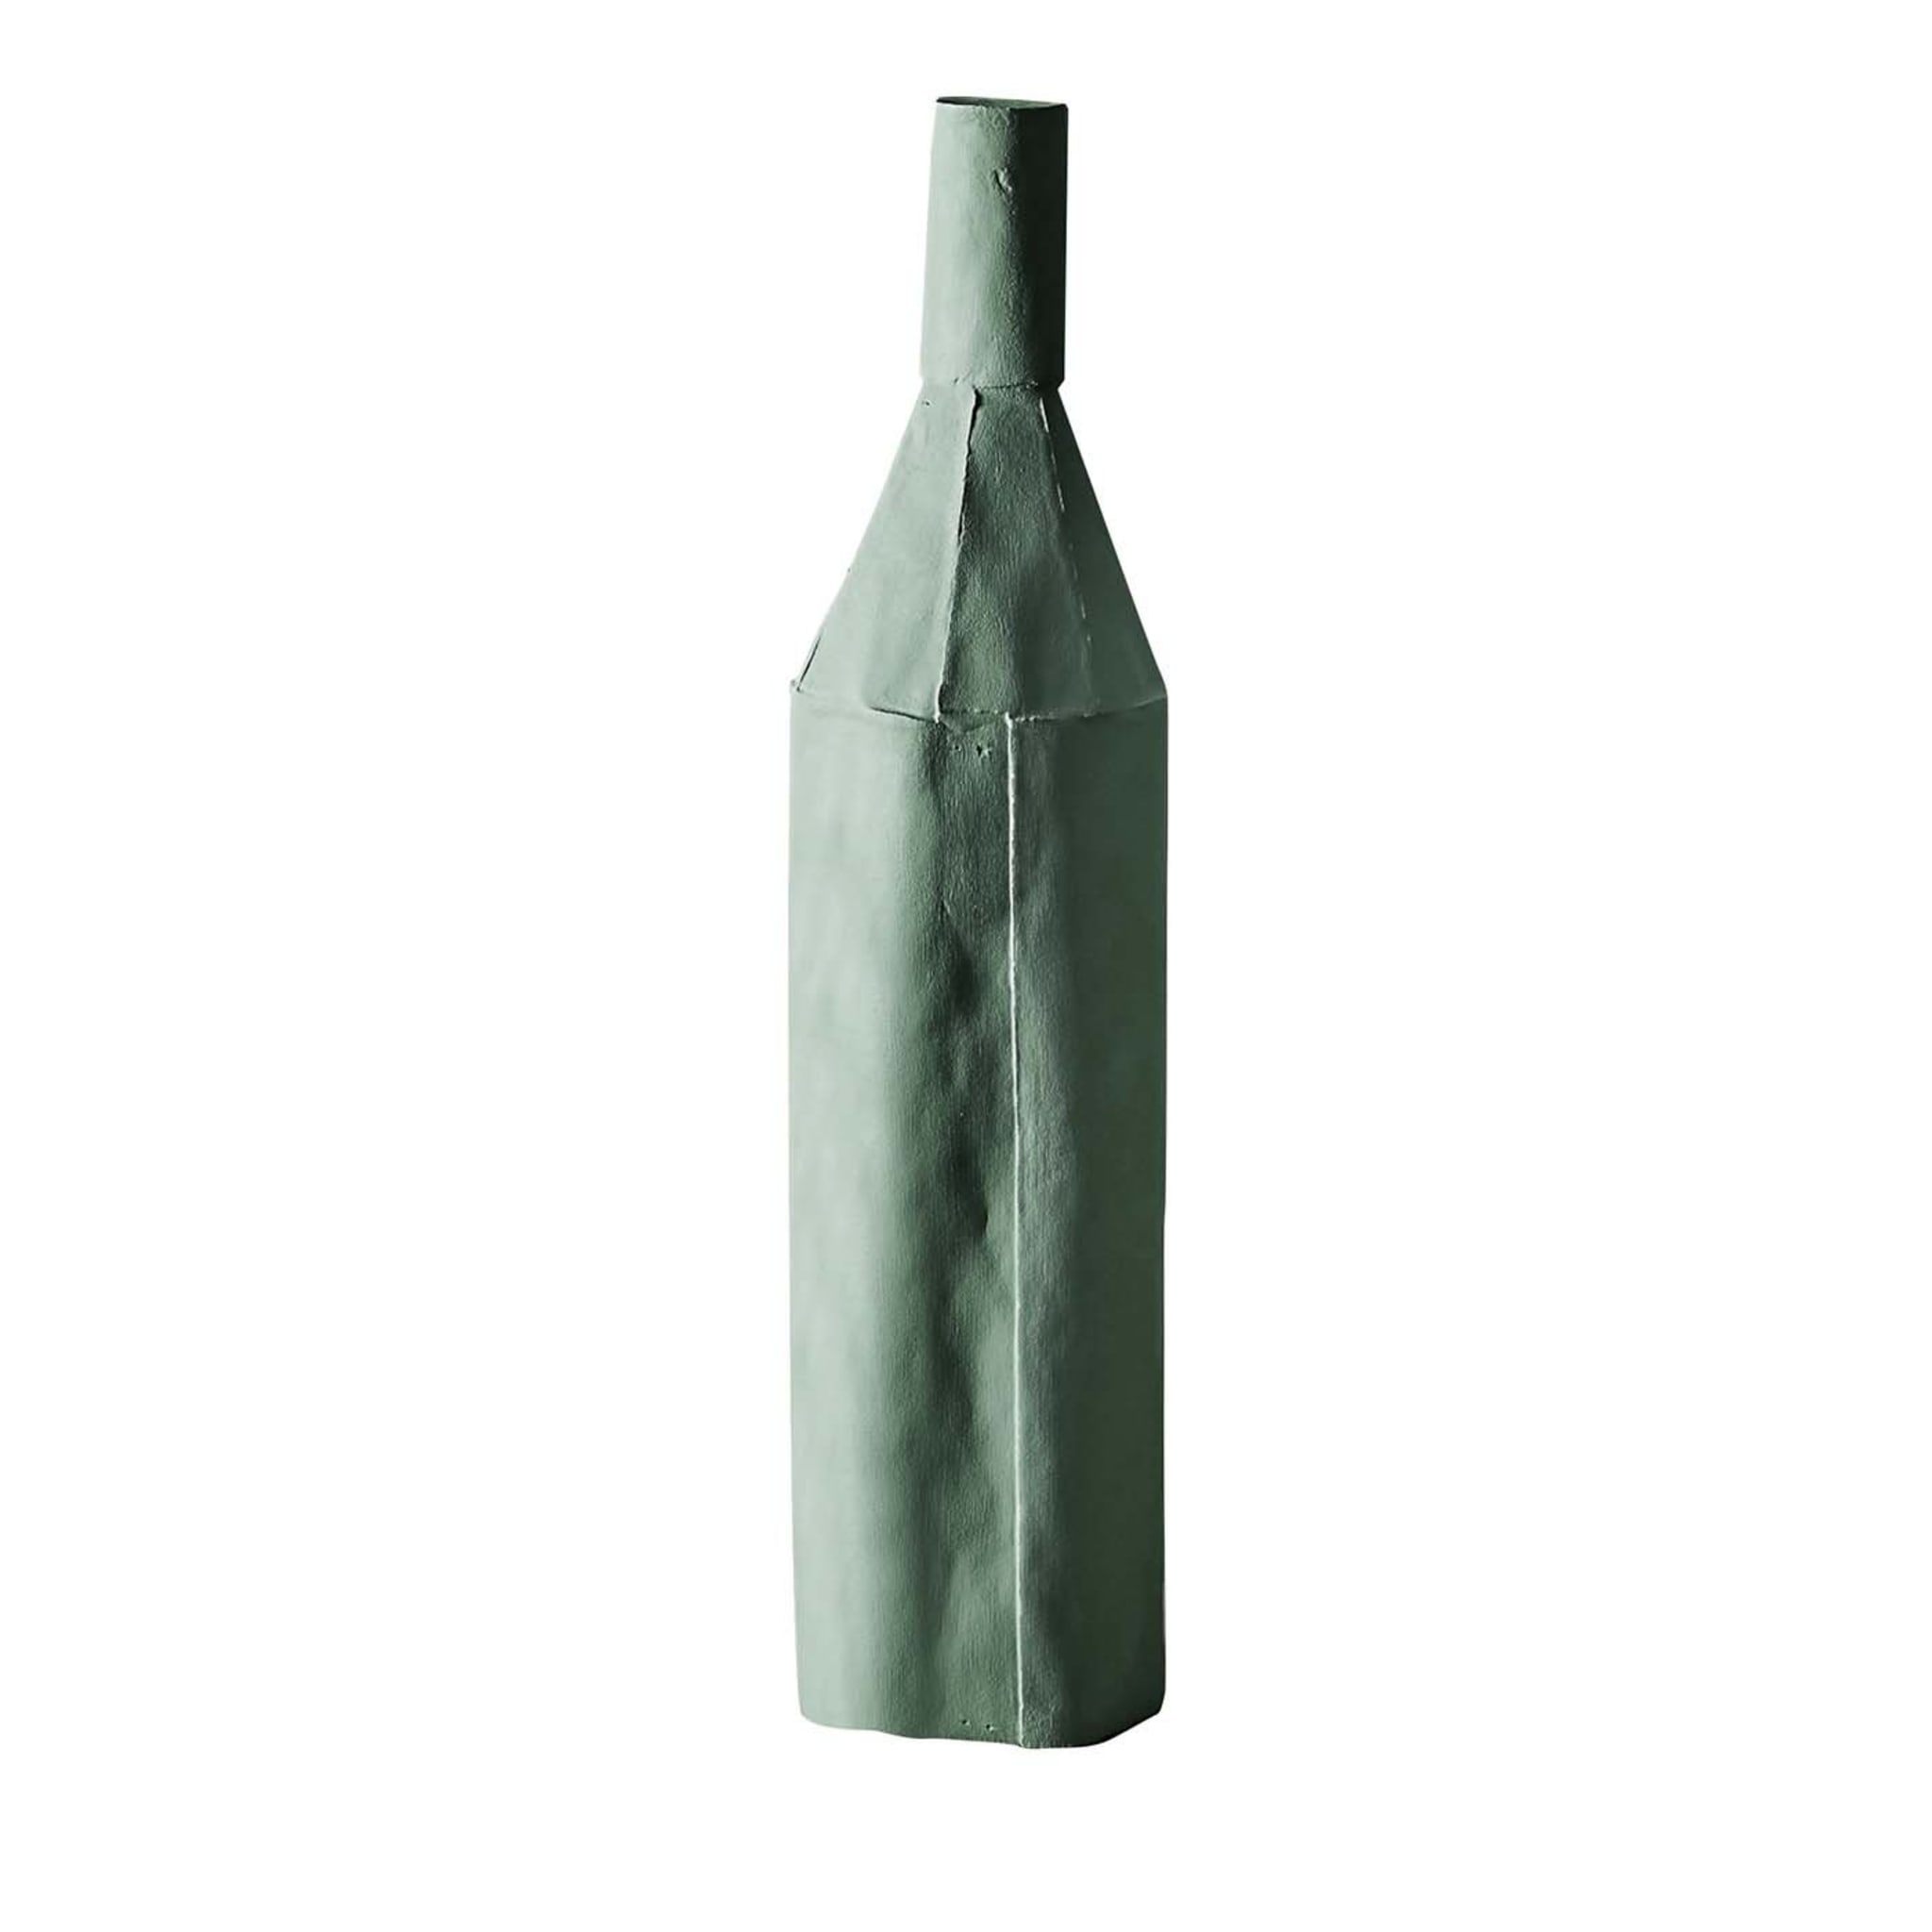 Cartocci Sage Green Decorative Bottle - Main view